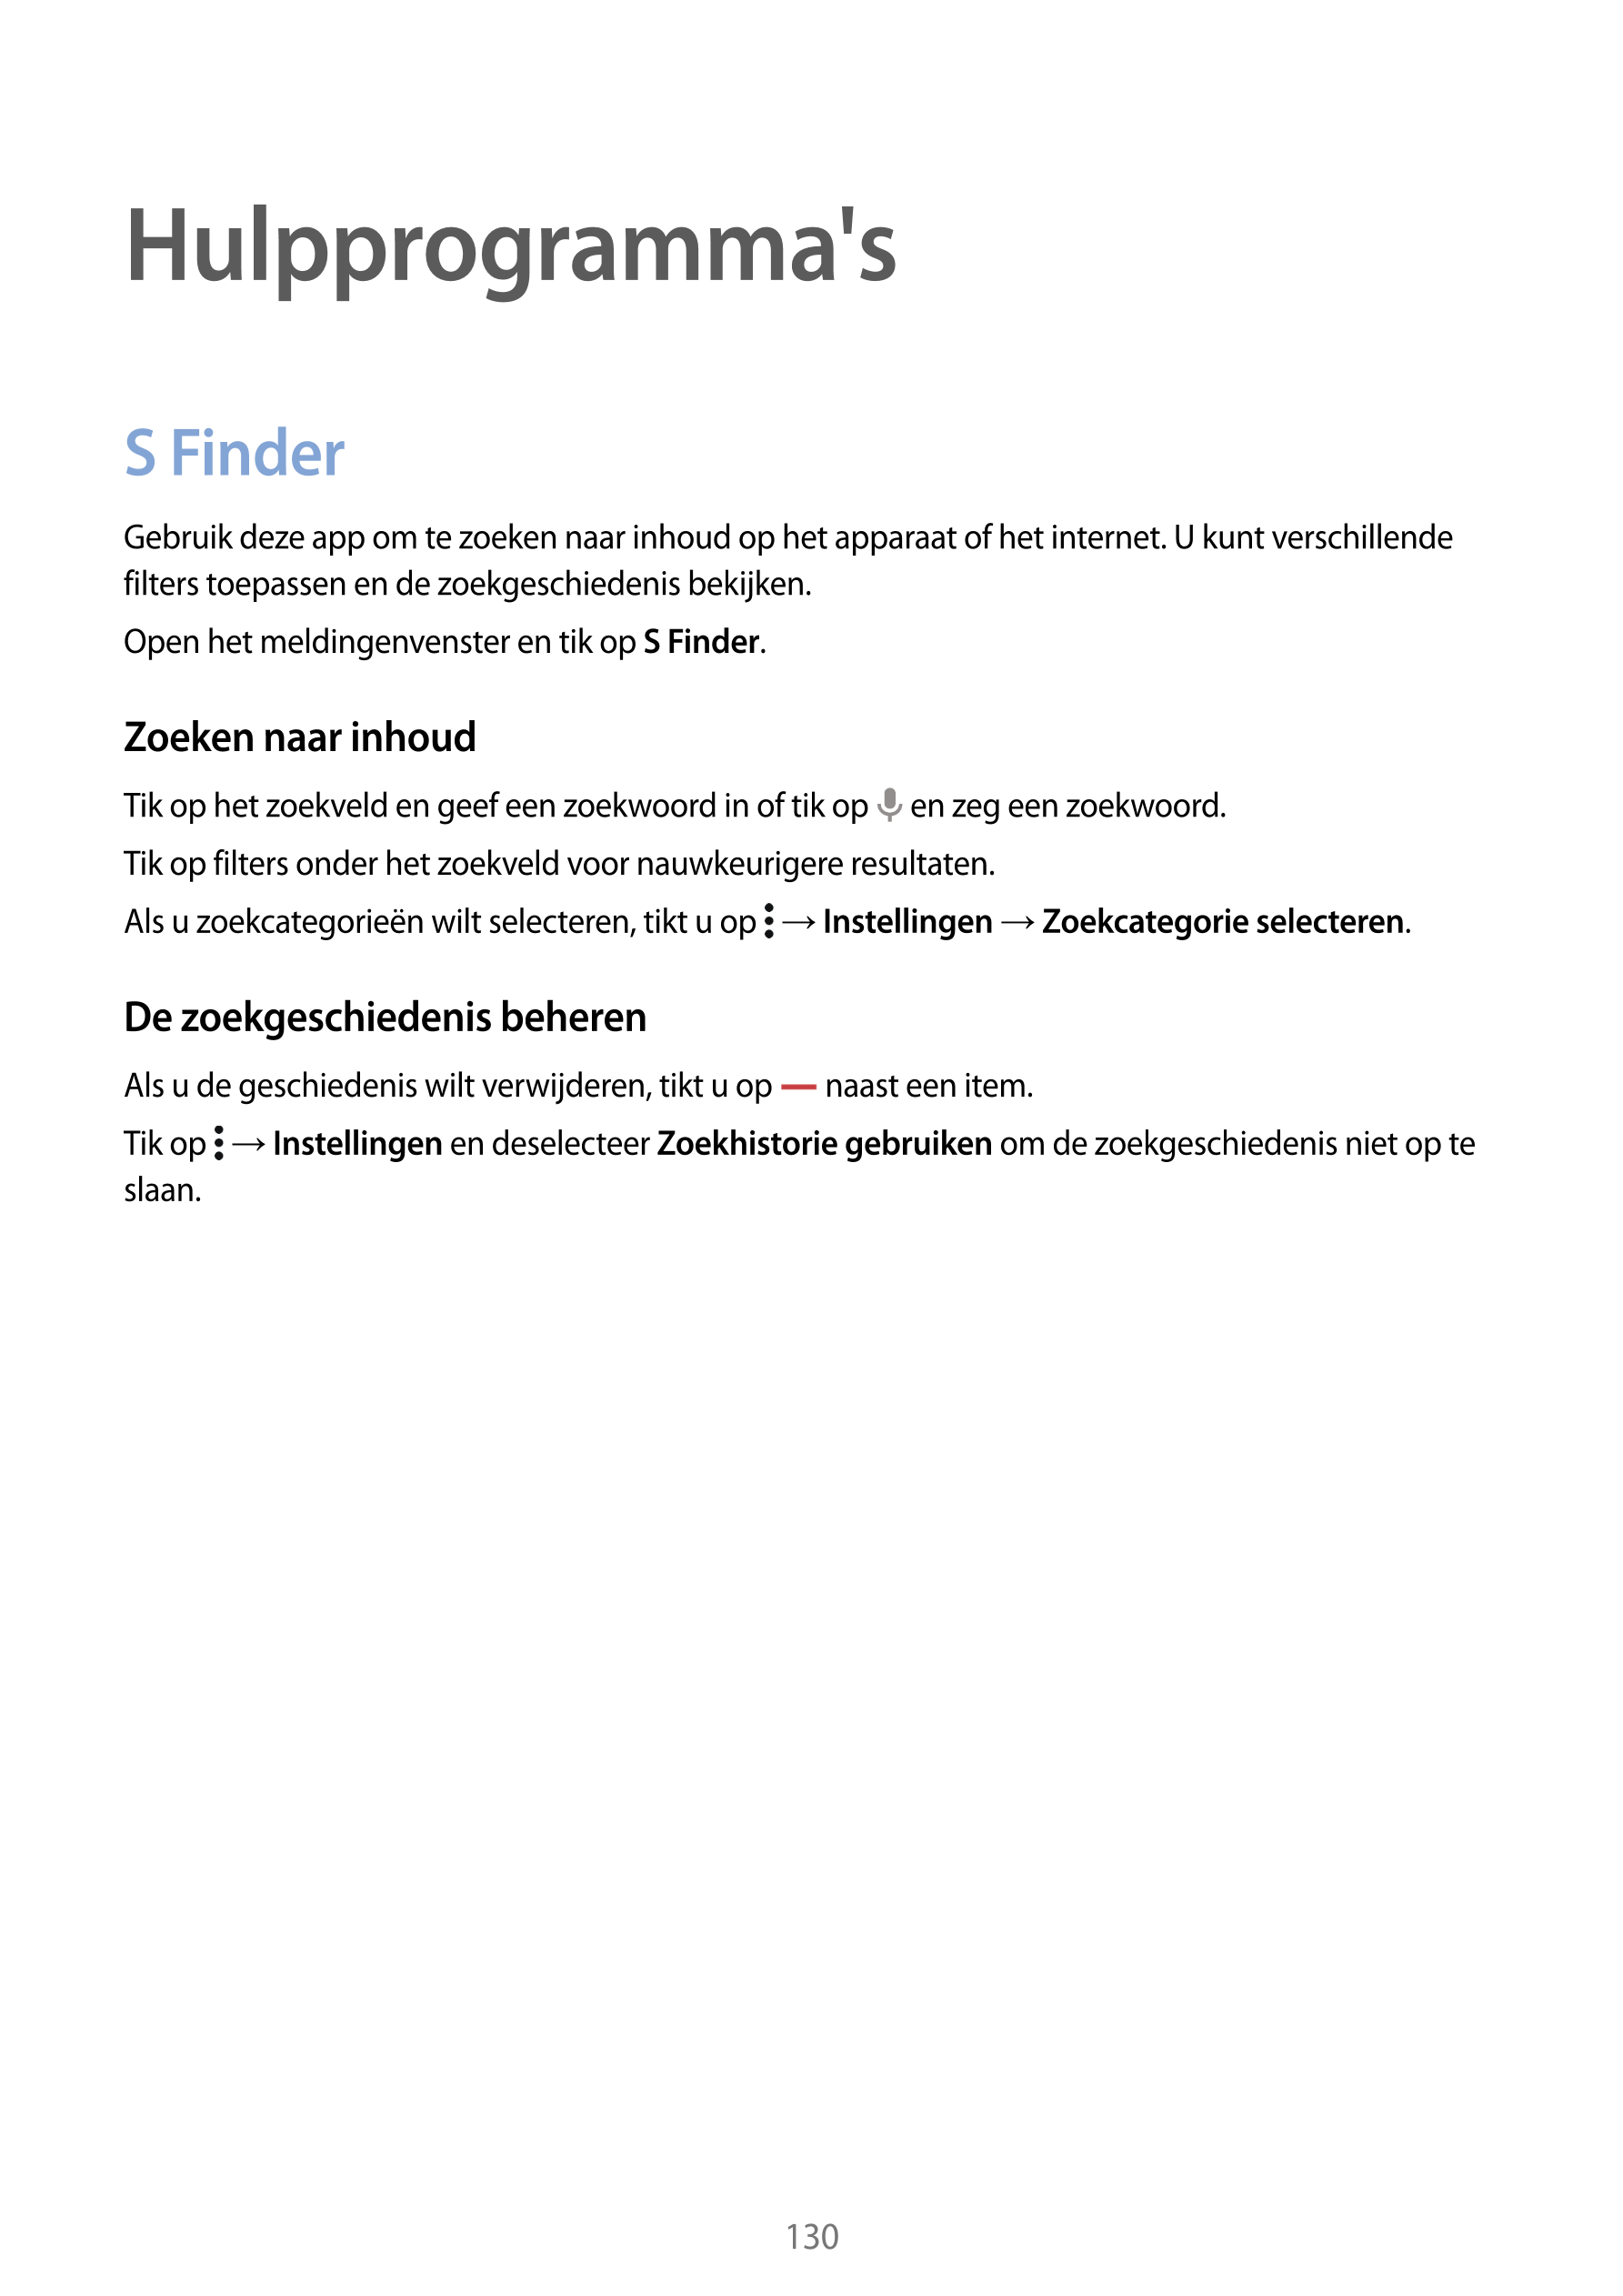 Hulpprogramma's
S Finder
Gebruik deze app om te zoeken naar inhoud op het apparaat of het internet. U kunt verschillende 
filter